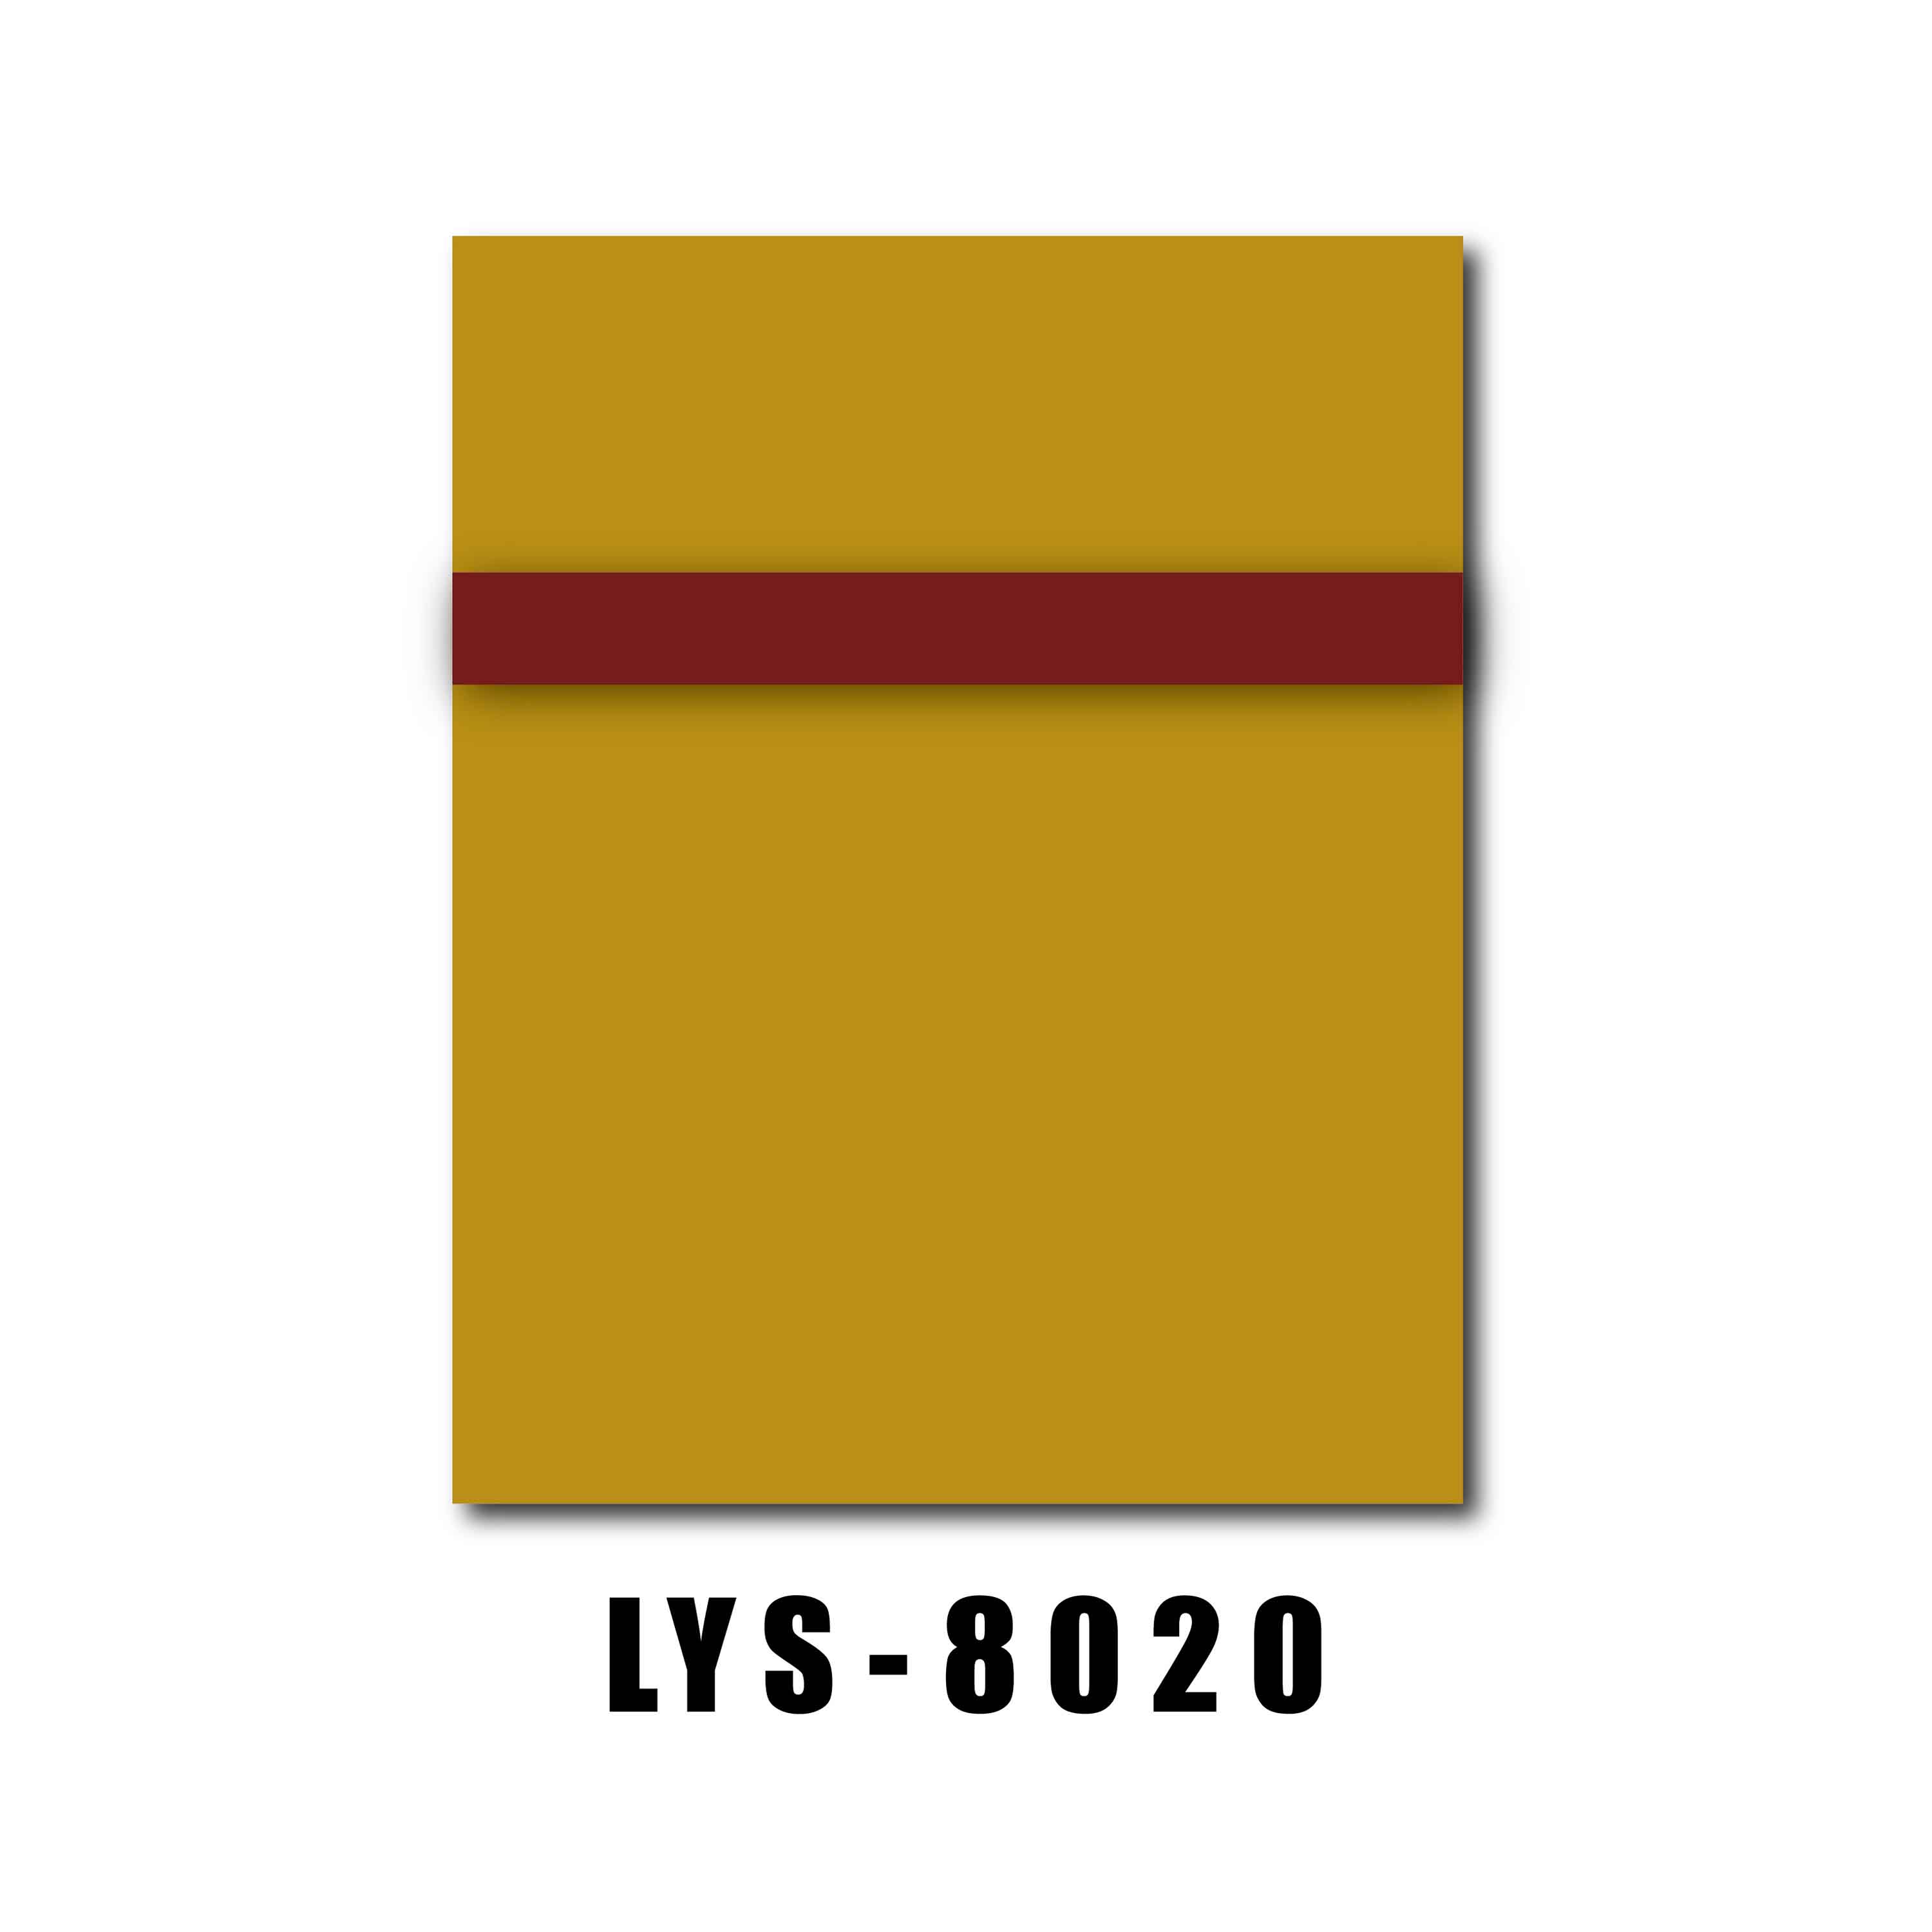 Bảng màu đôi ABS cho bảng tên - 0 